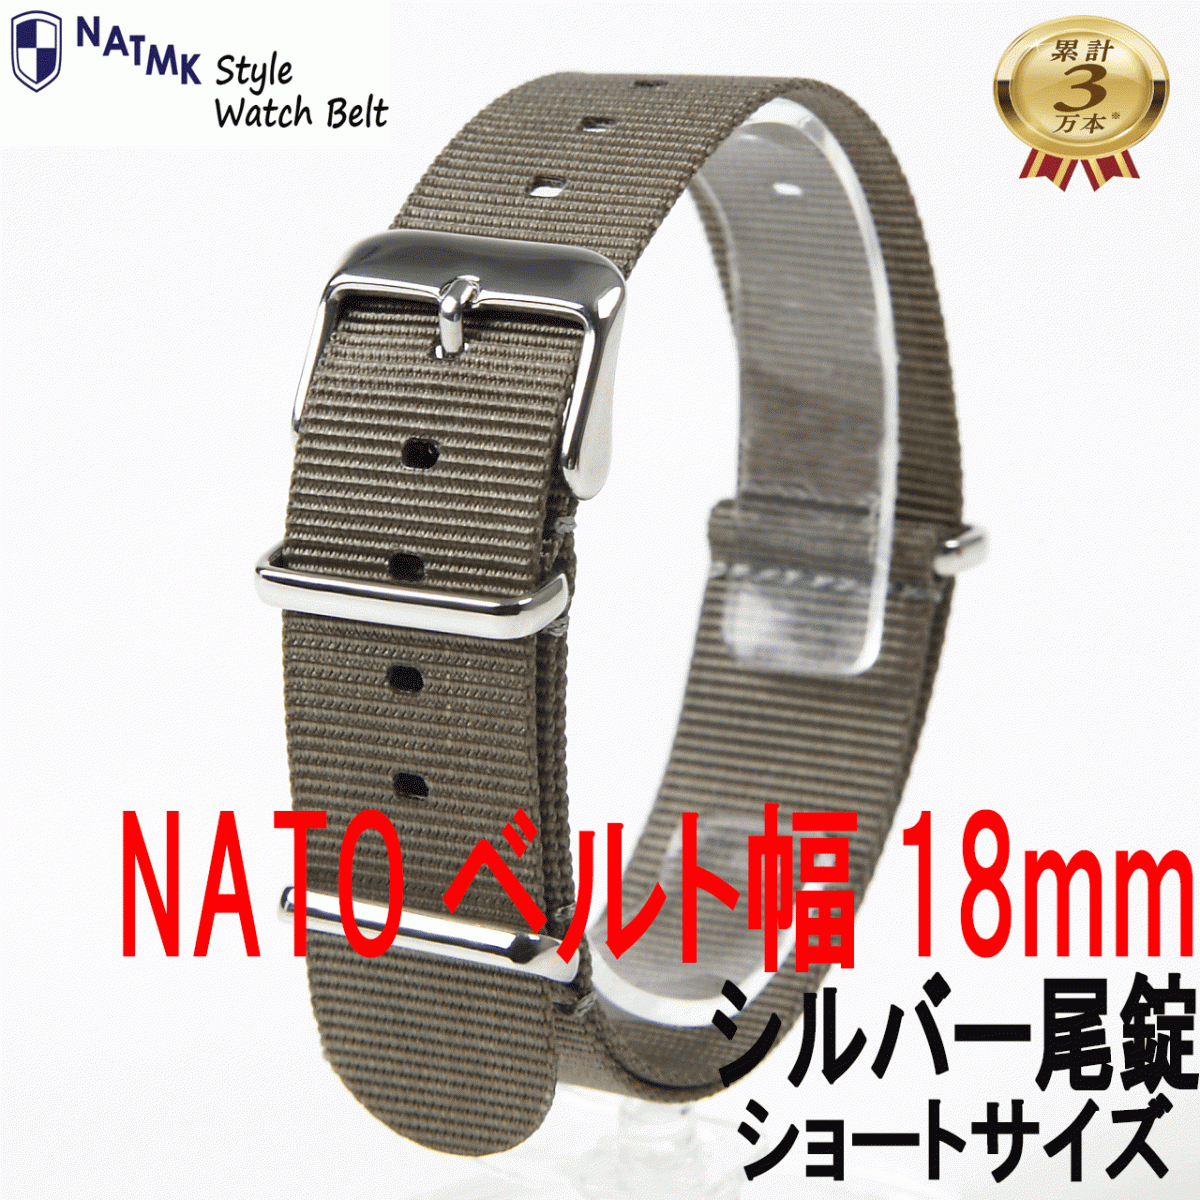 NATO18mm グレー シルバー尾錠 ショートサイズ 取付けマニュアル 時計ベルト _画像1